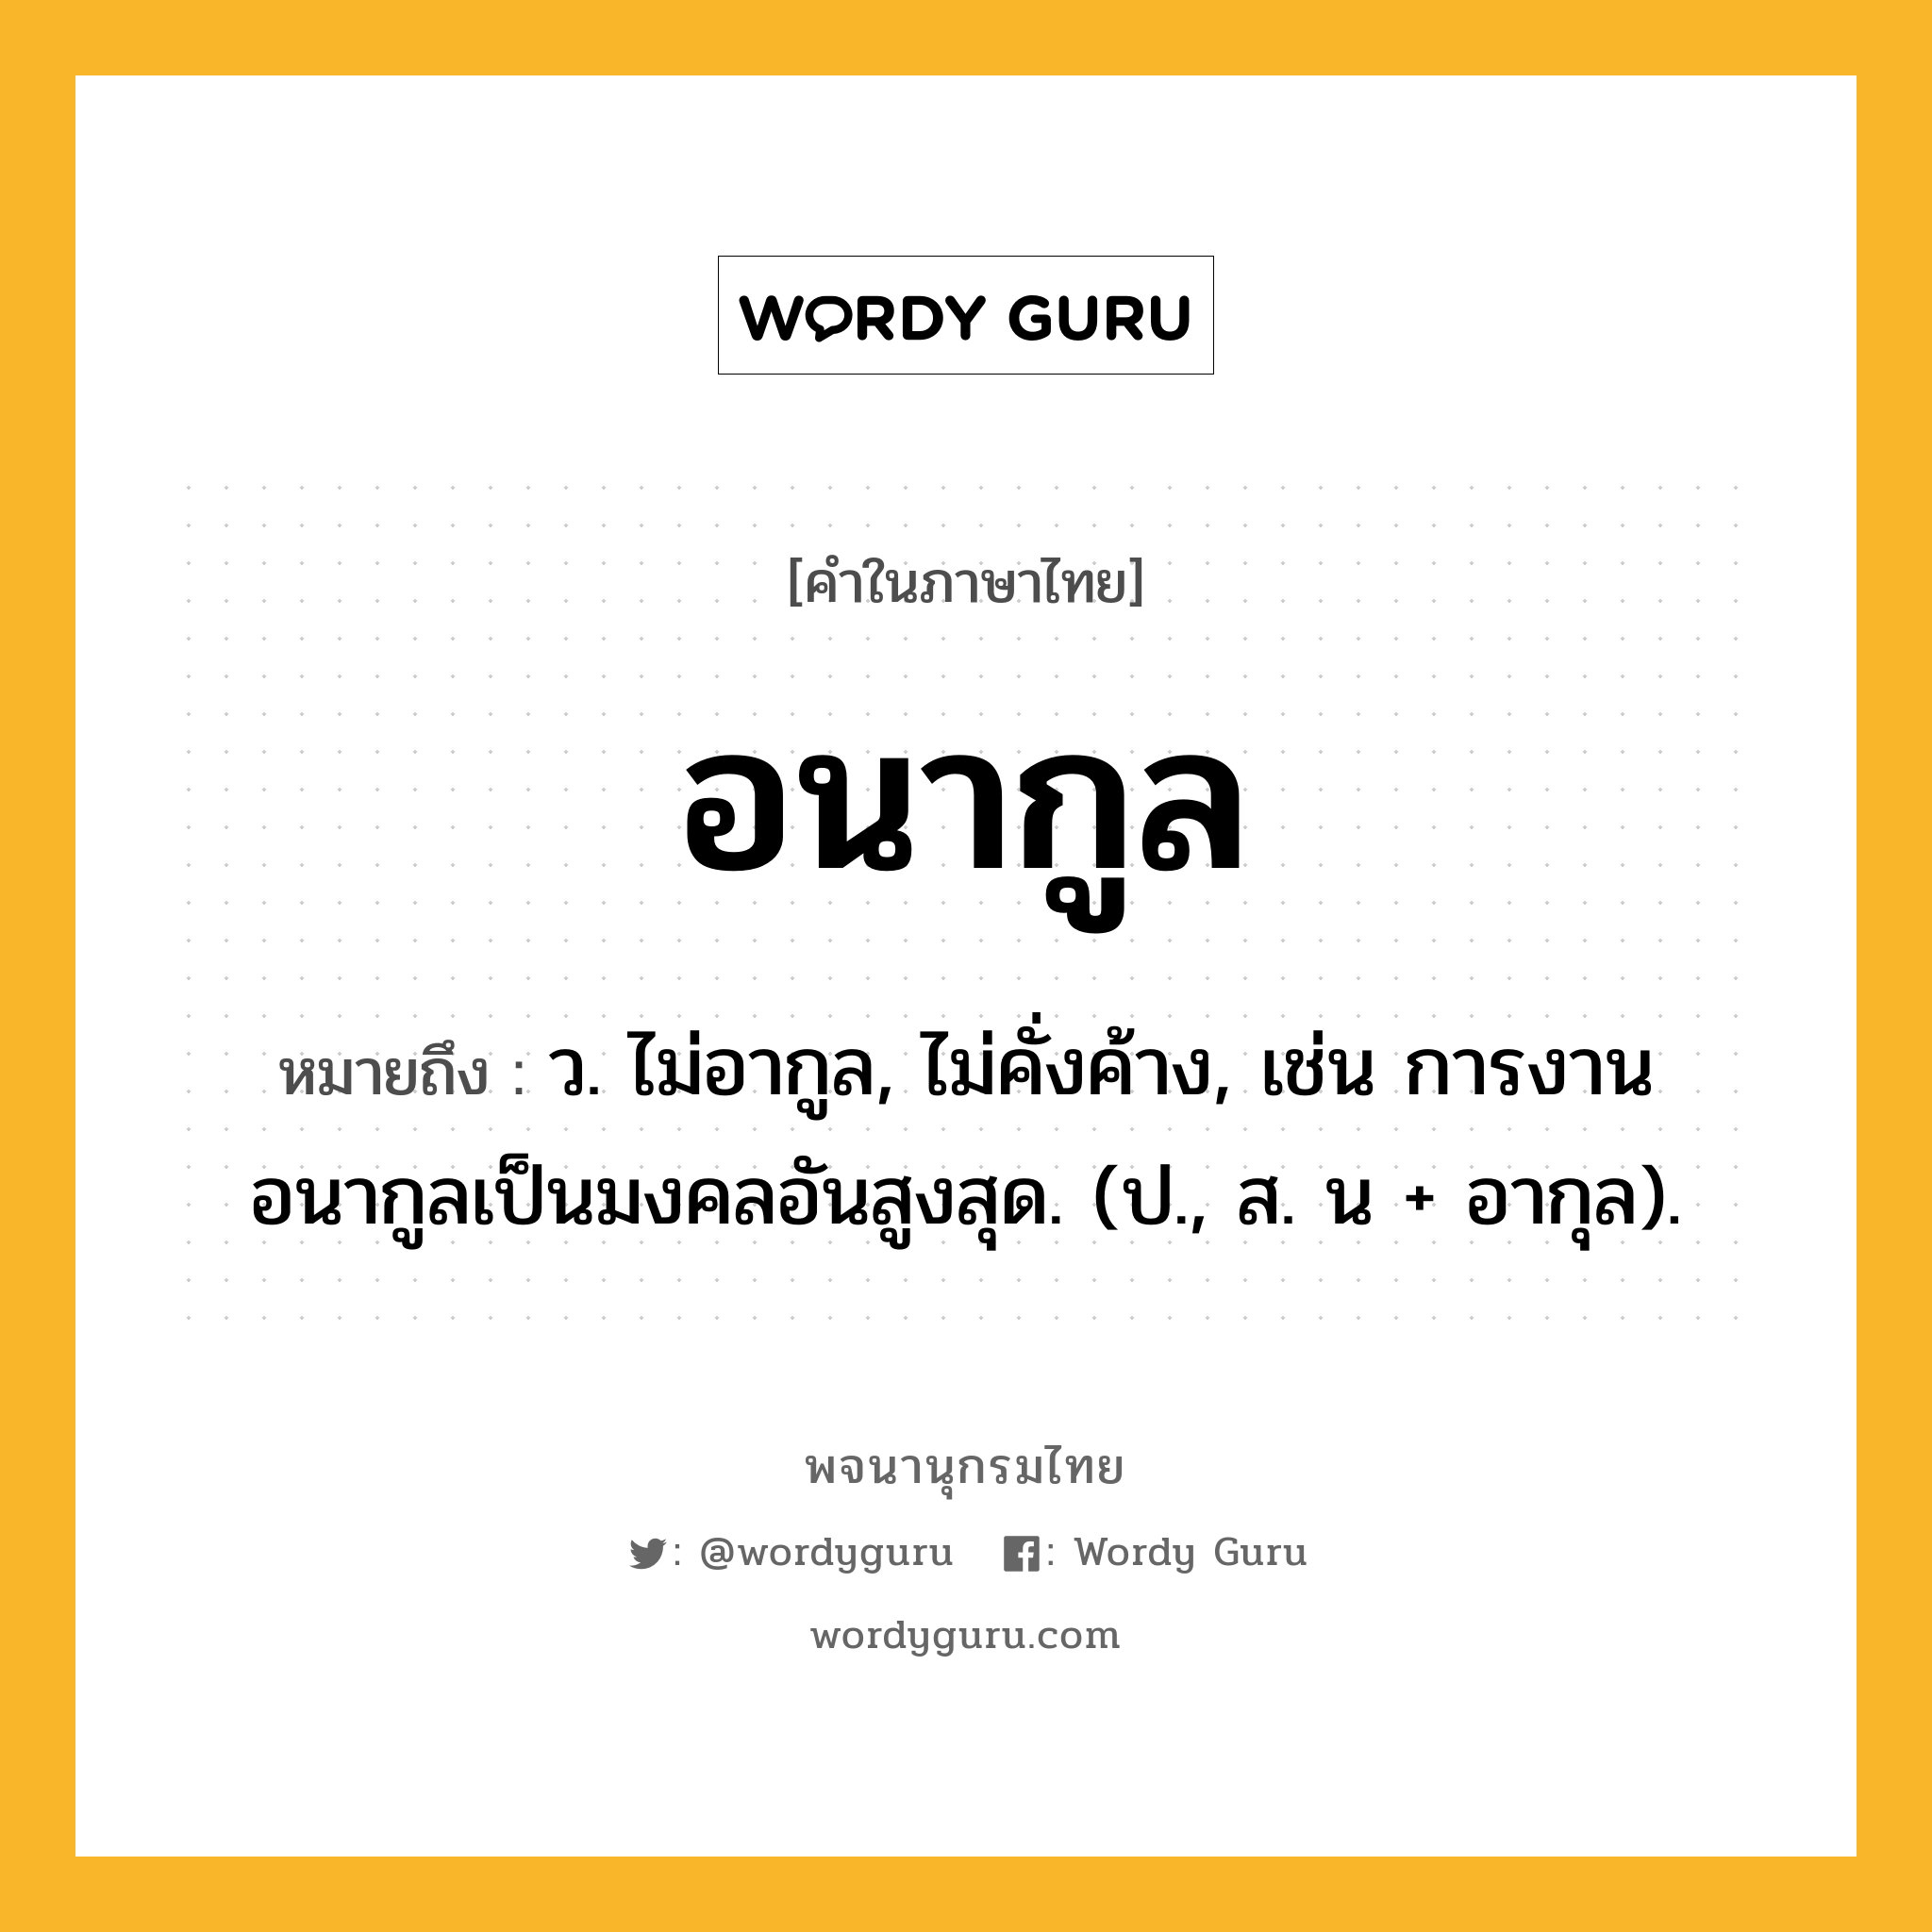 อนากูล หมายถึงอะไร?, คำในภาษาไทย อนากูล หมายถึง ว. ไม่อากูล, ไม่คั่งค้าง, เช่น การงานอนากูลเป็นมงคลอันสูงสุด. (ป., ส. น + อากุล).